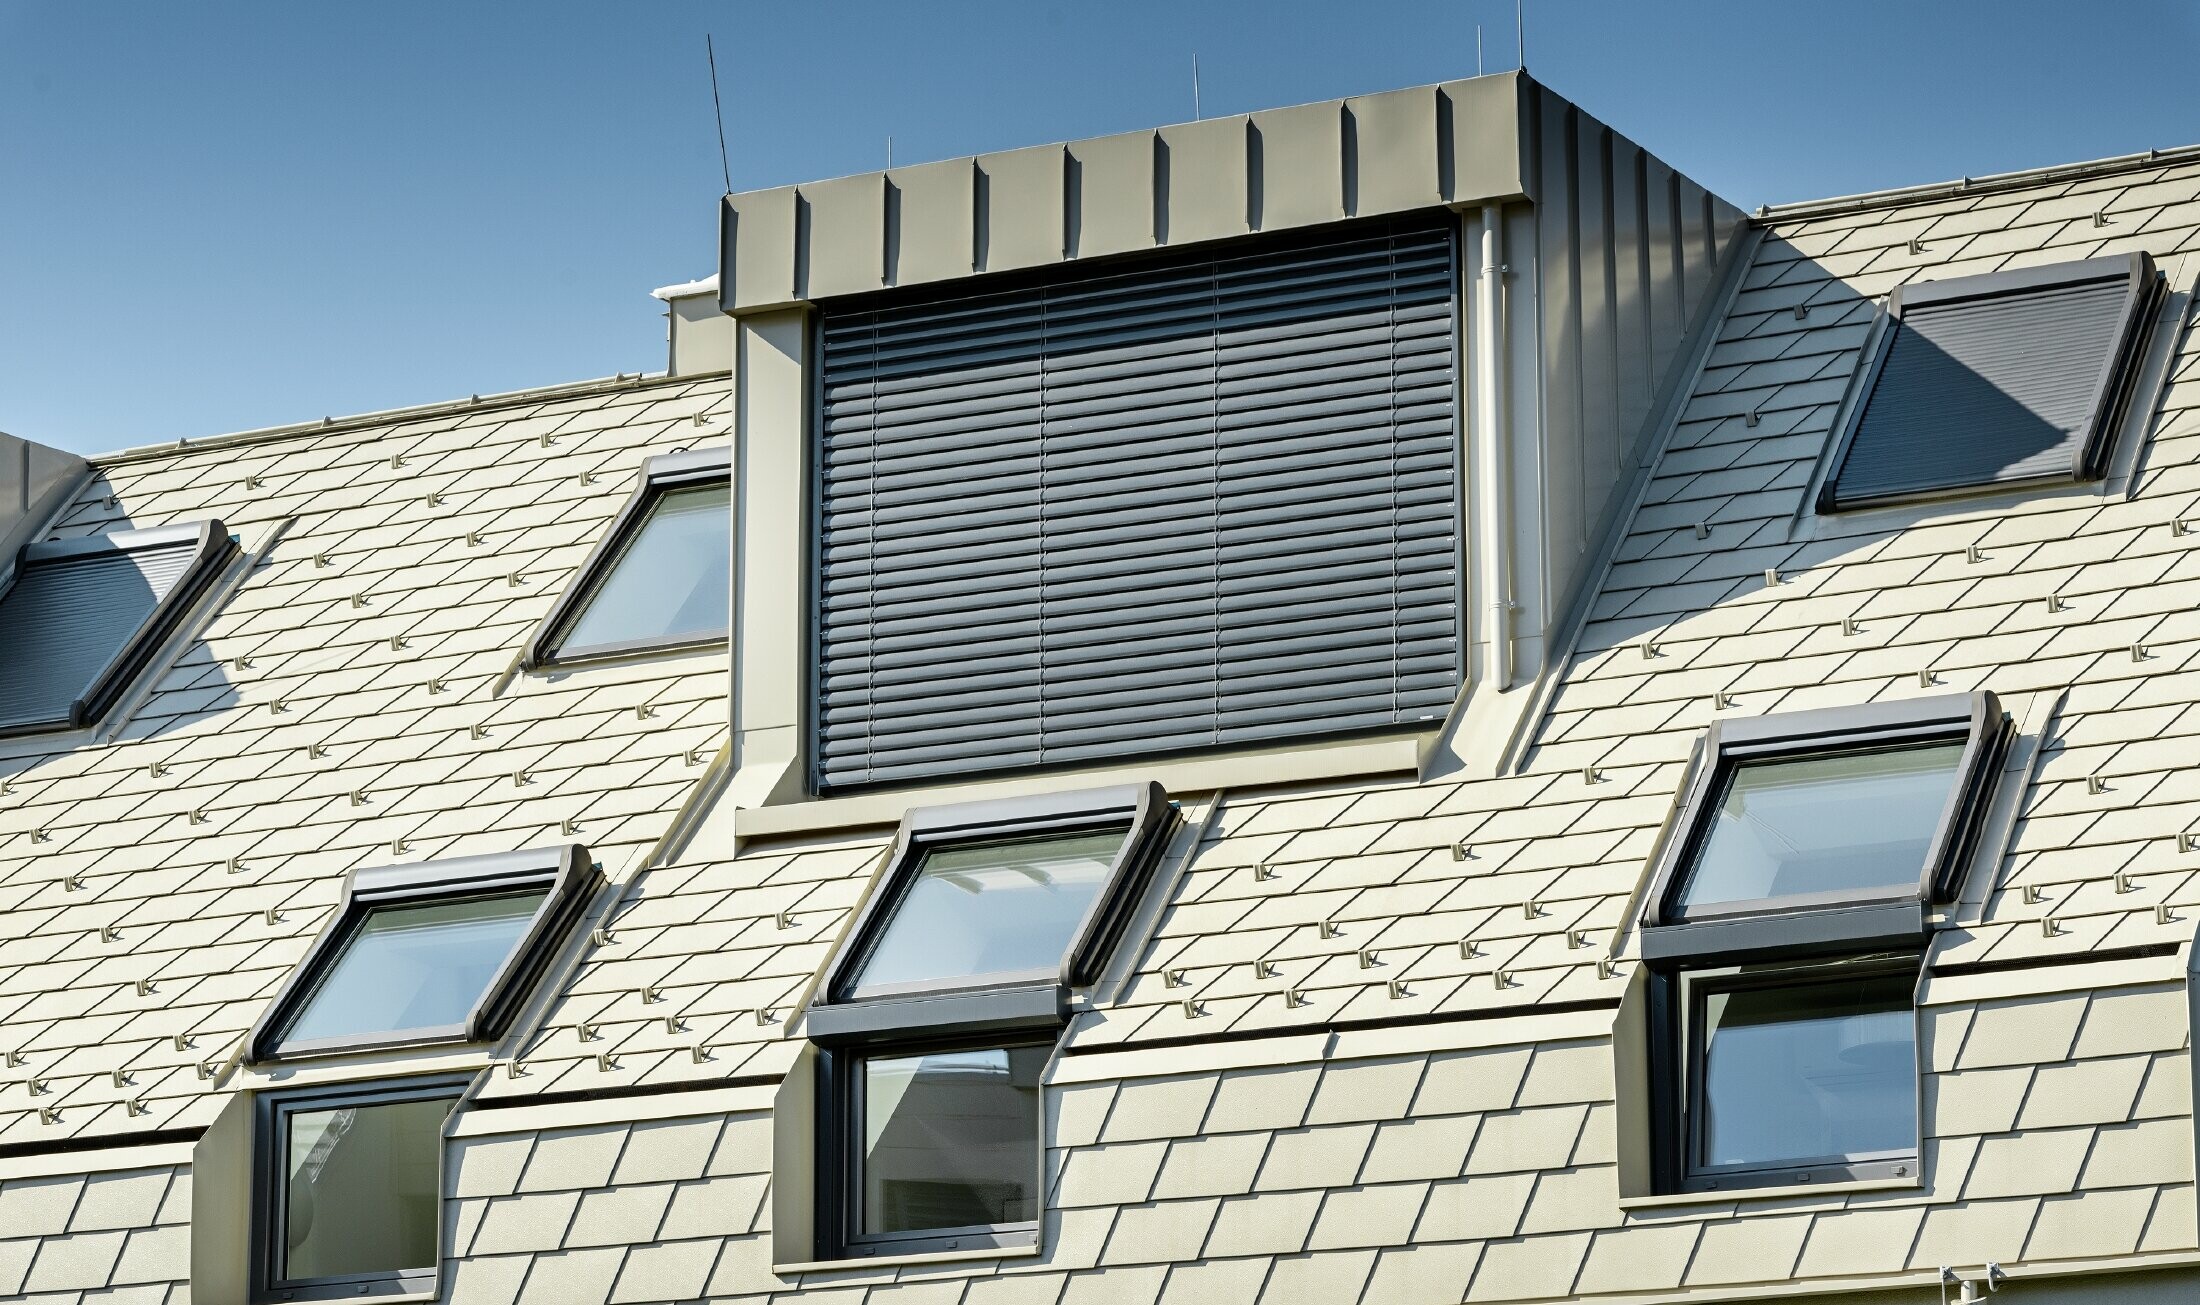 Nieuw woongebouw met groot aluminium dakvlak en talrijke dakvensters